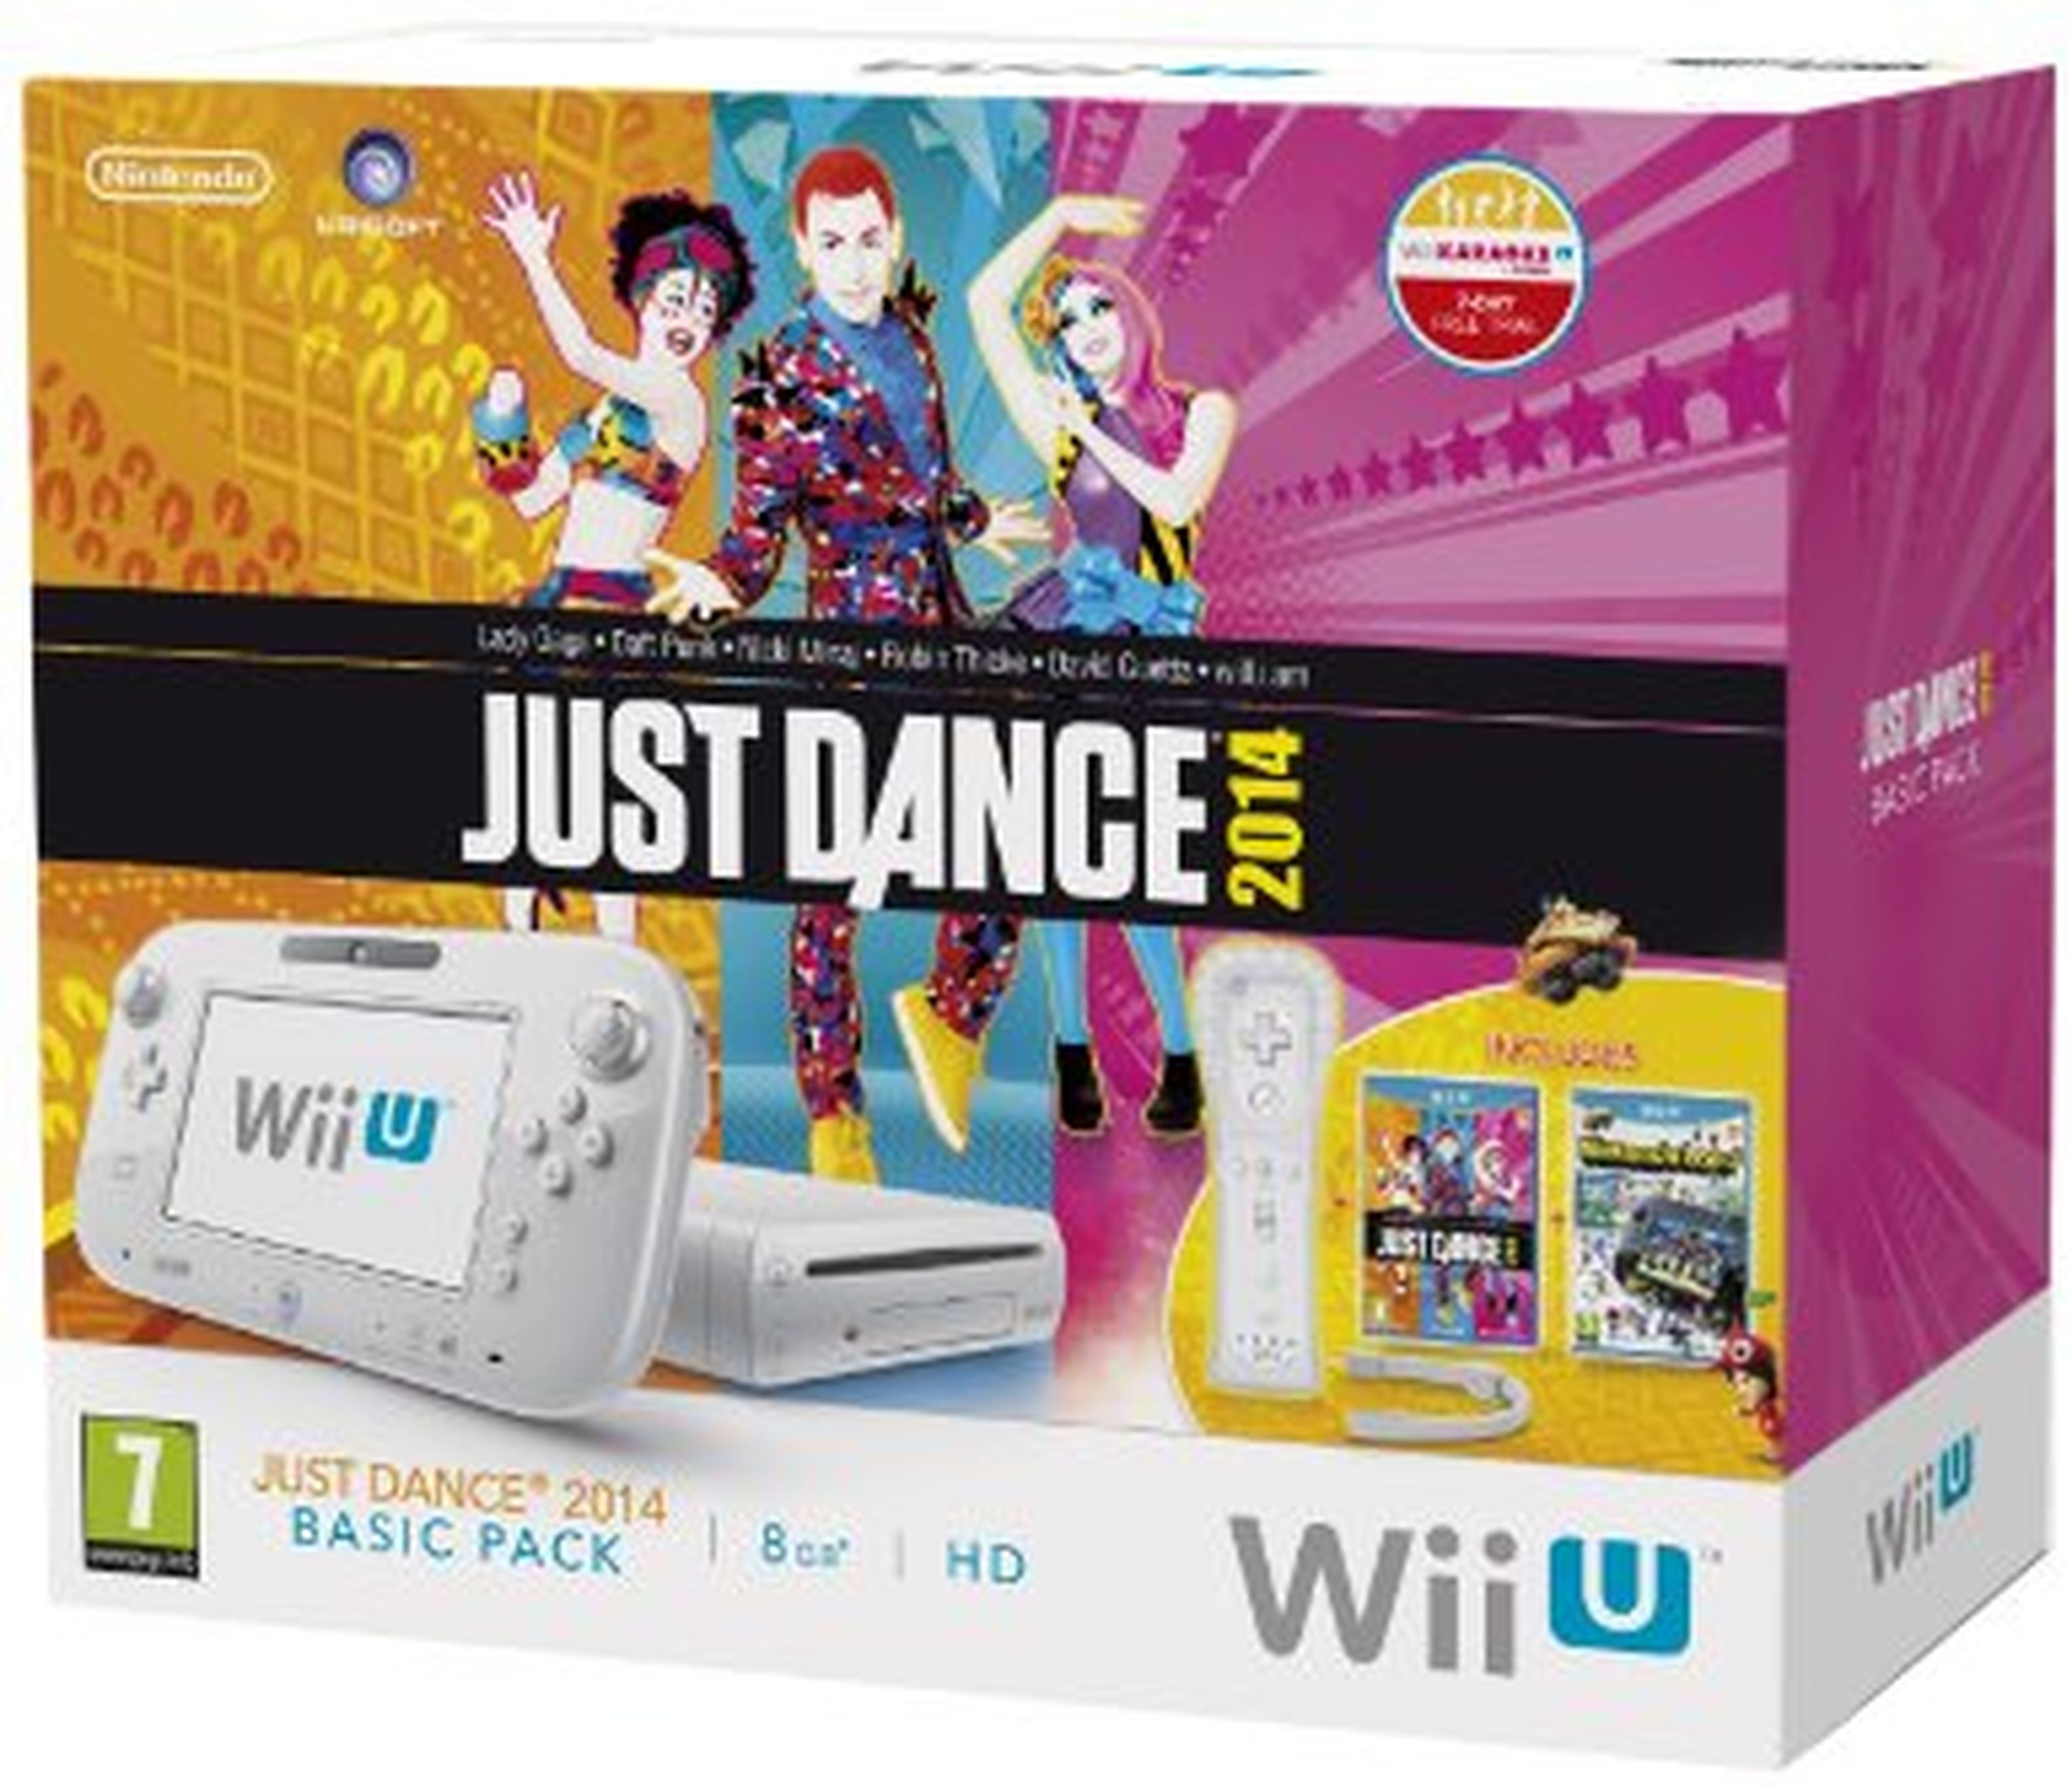 Guía de compras Navidad 2015: Los mejores packs de Wii U y 3DS